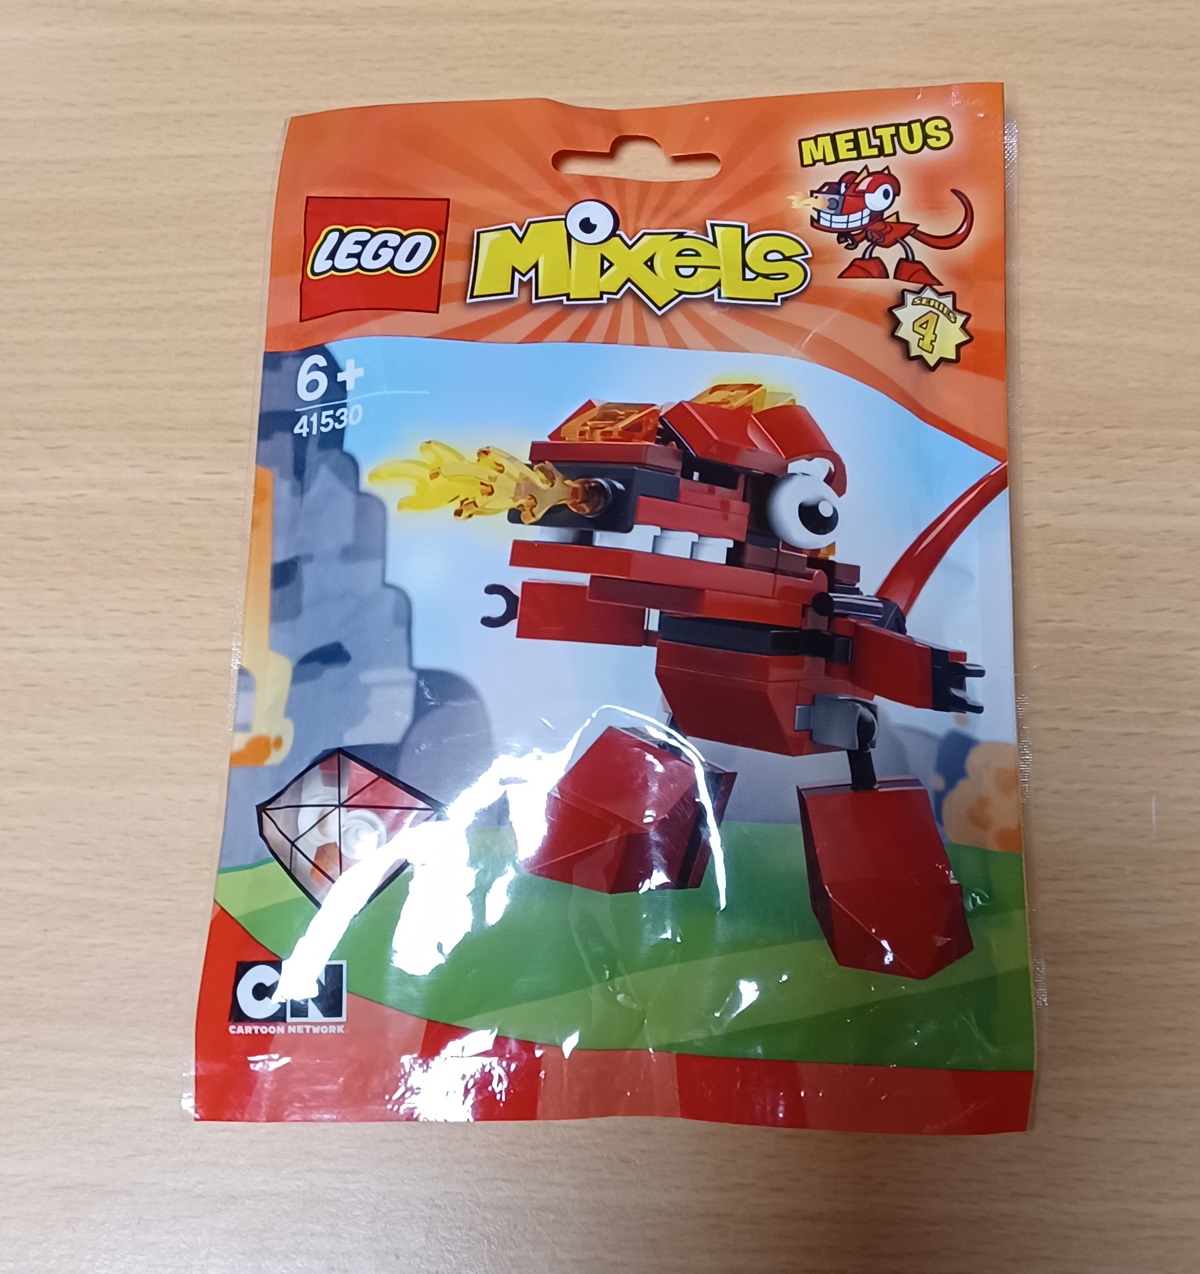 0030 Lego Mixels 41530